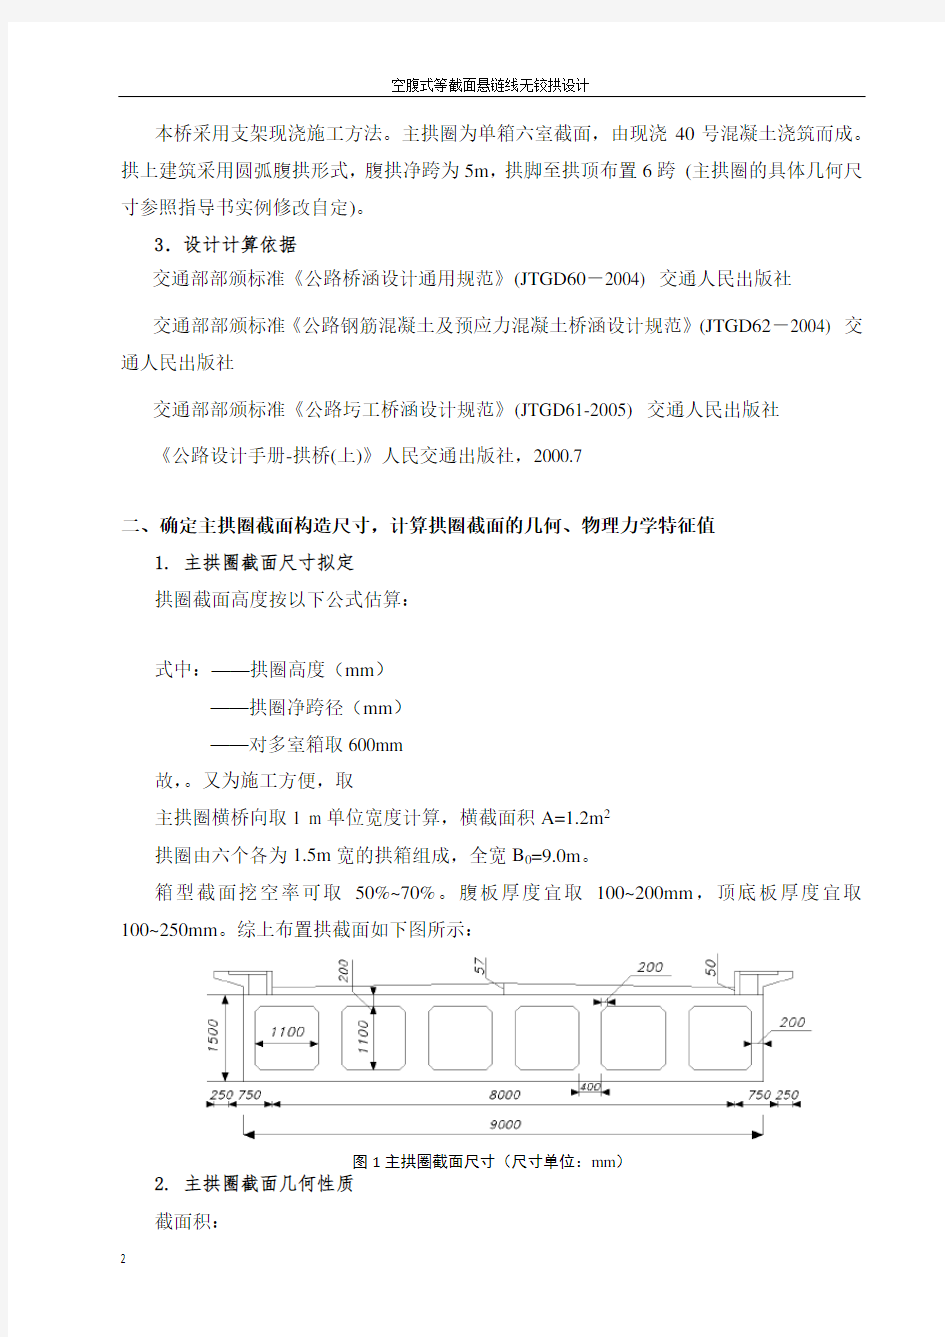 南京工业大学桥梁工程课程设计2(空腹式拱桥设计) - 副本教材